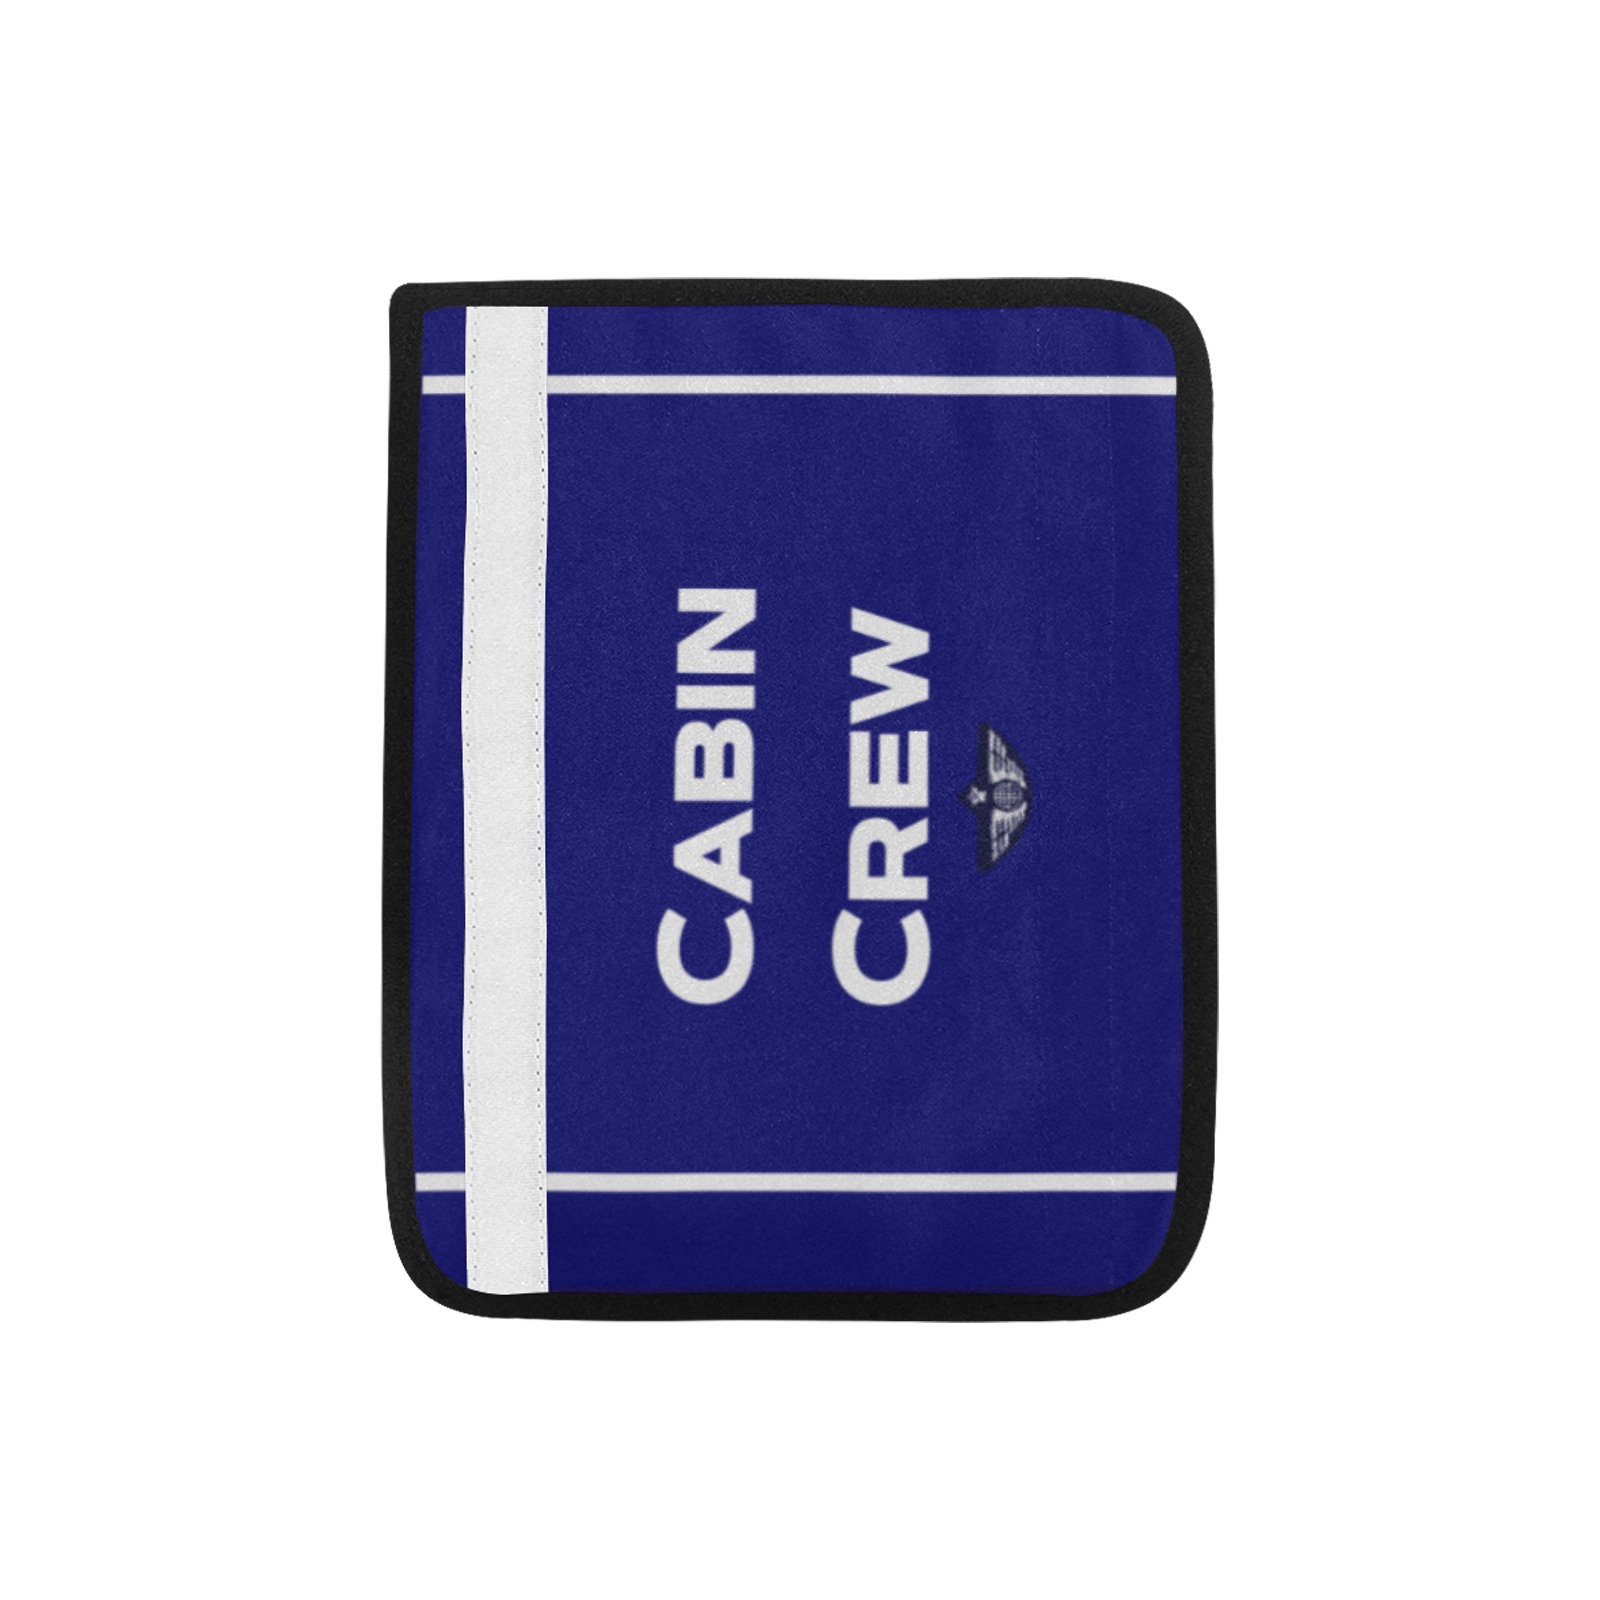 CabinCrew car seatbelt cover Car Seat Belt Cover 7''x8.5''